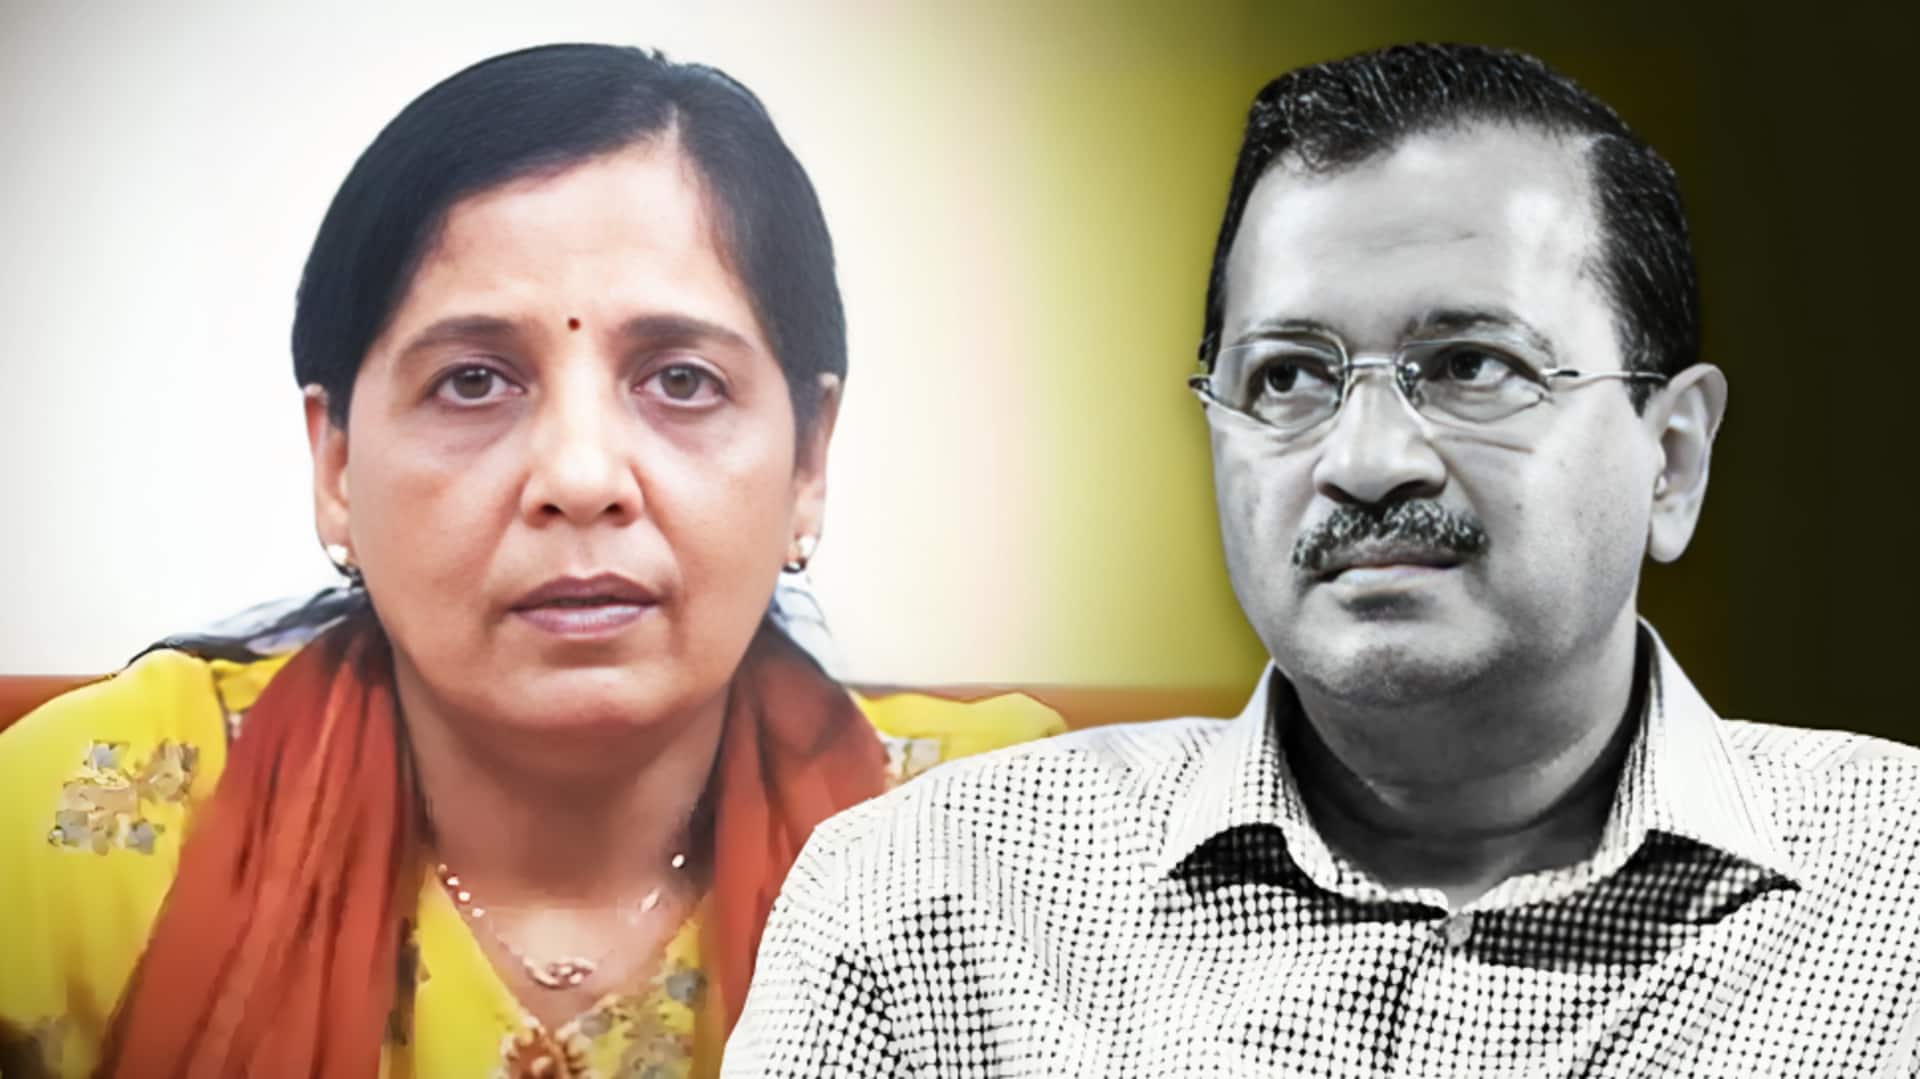 दिल्ली: केजरीवाल की पत्नी से मिलने उनके घर पहुंचे AAP विधायक, बोले- इस्तीफा न दें